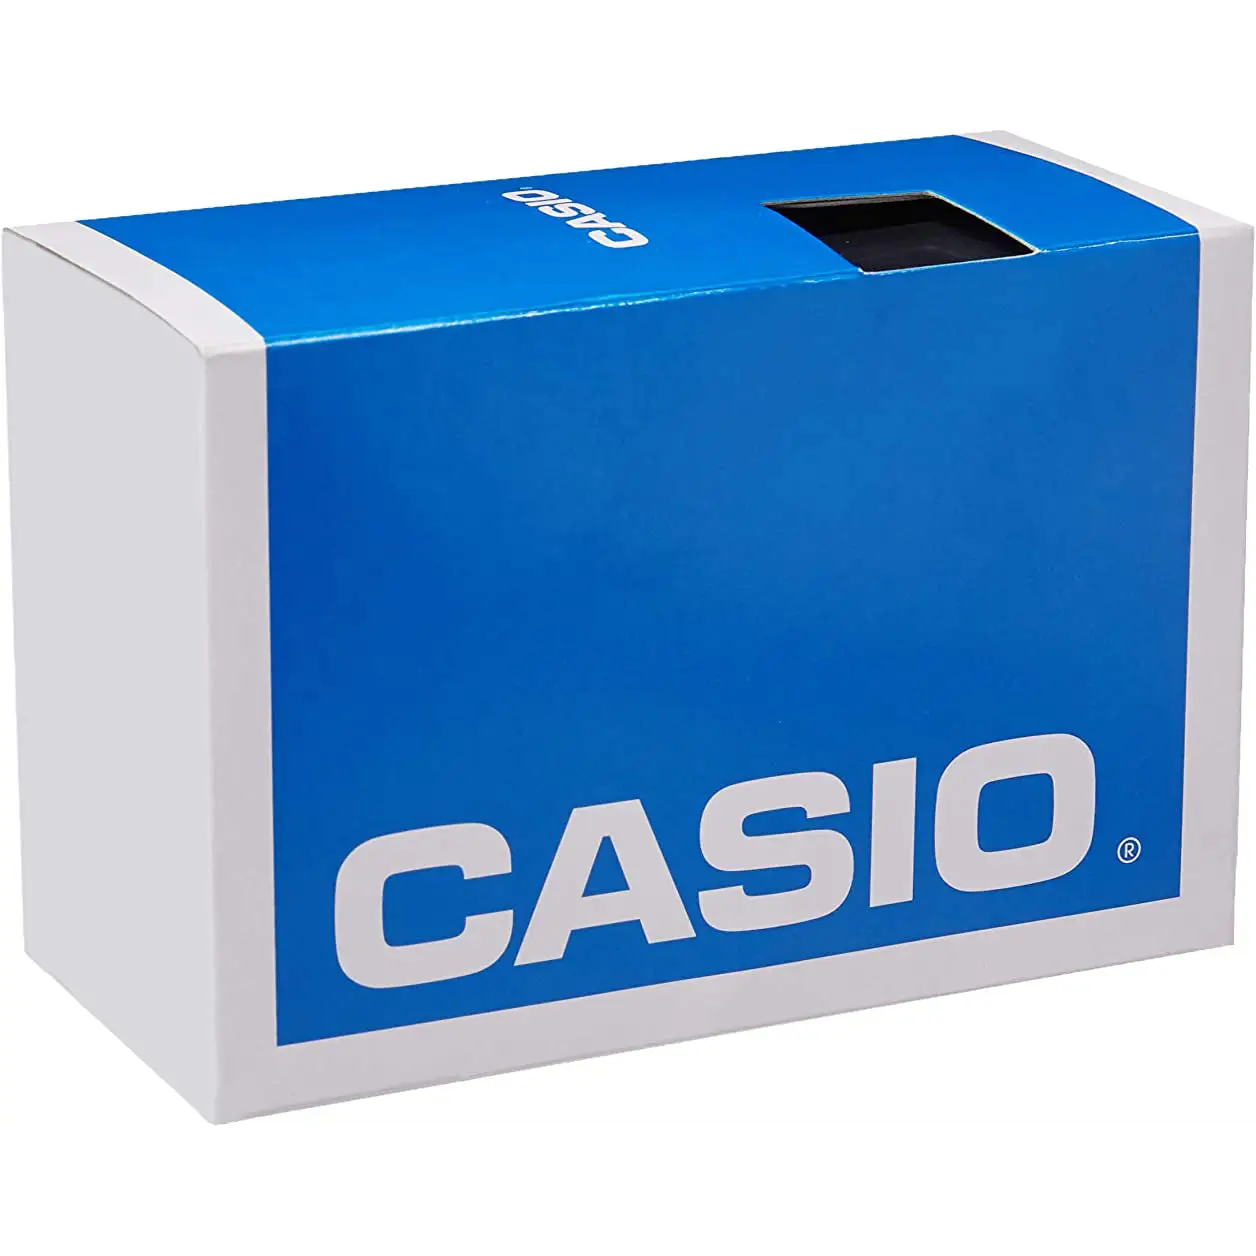 Casio Men Digital Quartz Vibration Alarm 100m Blue Resin